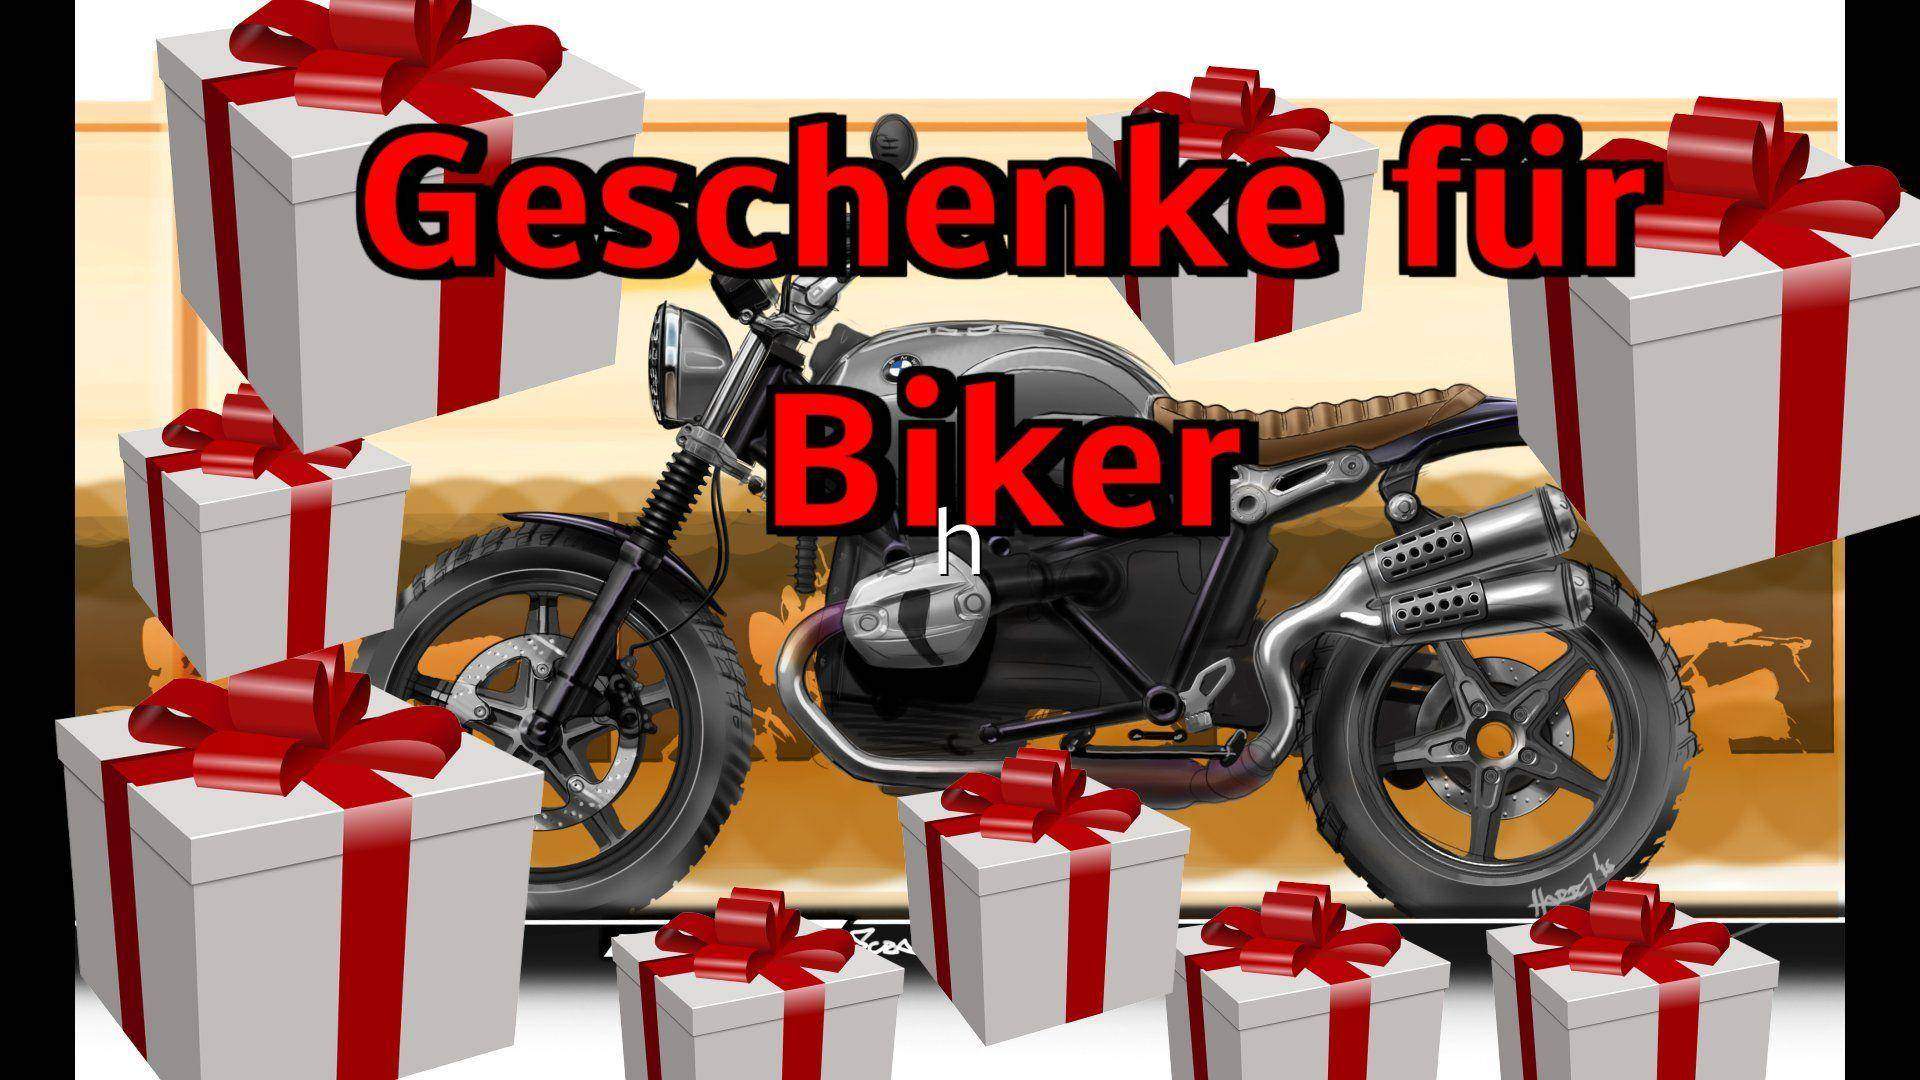 Weihnachtsgeschenk für Motorradfahrer – Geschenke für Biker